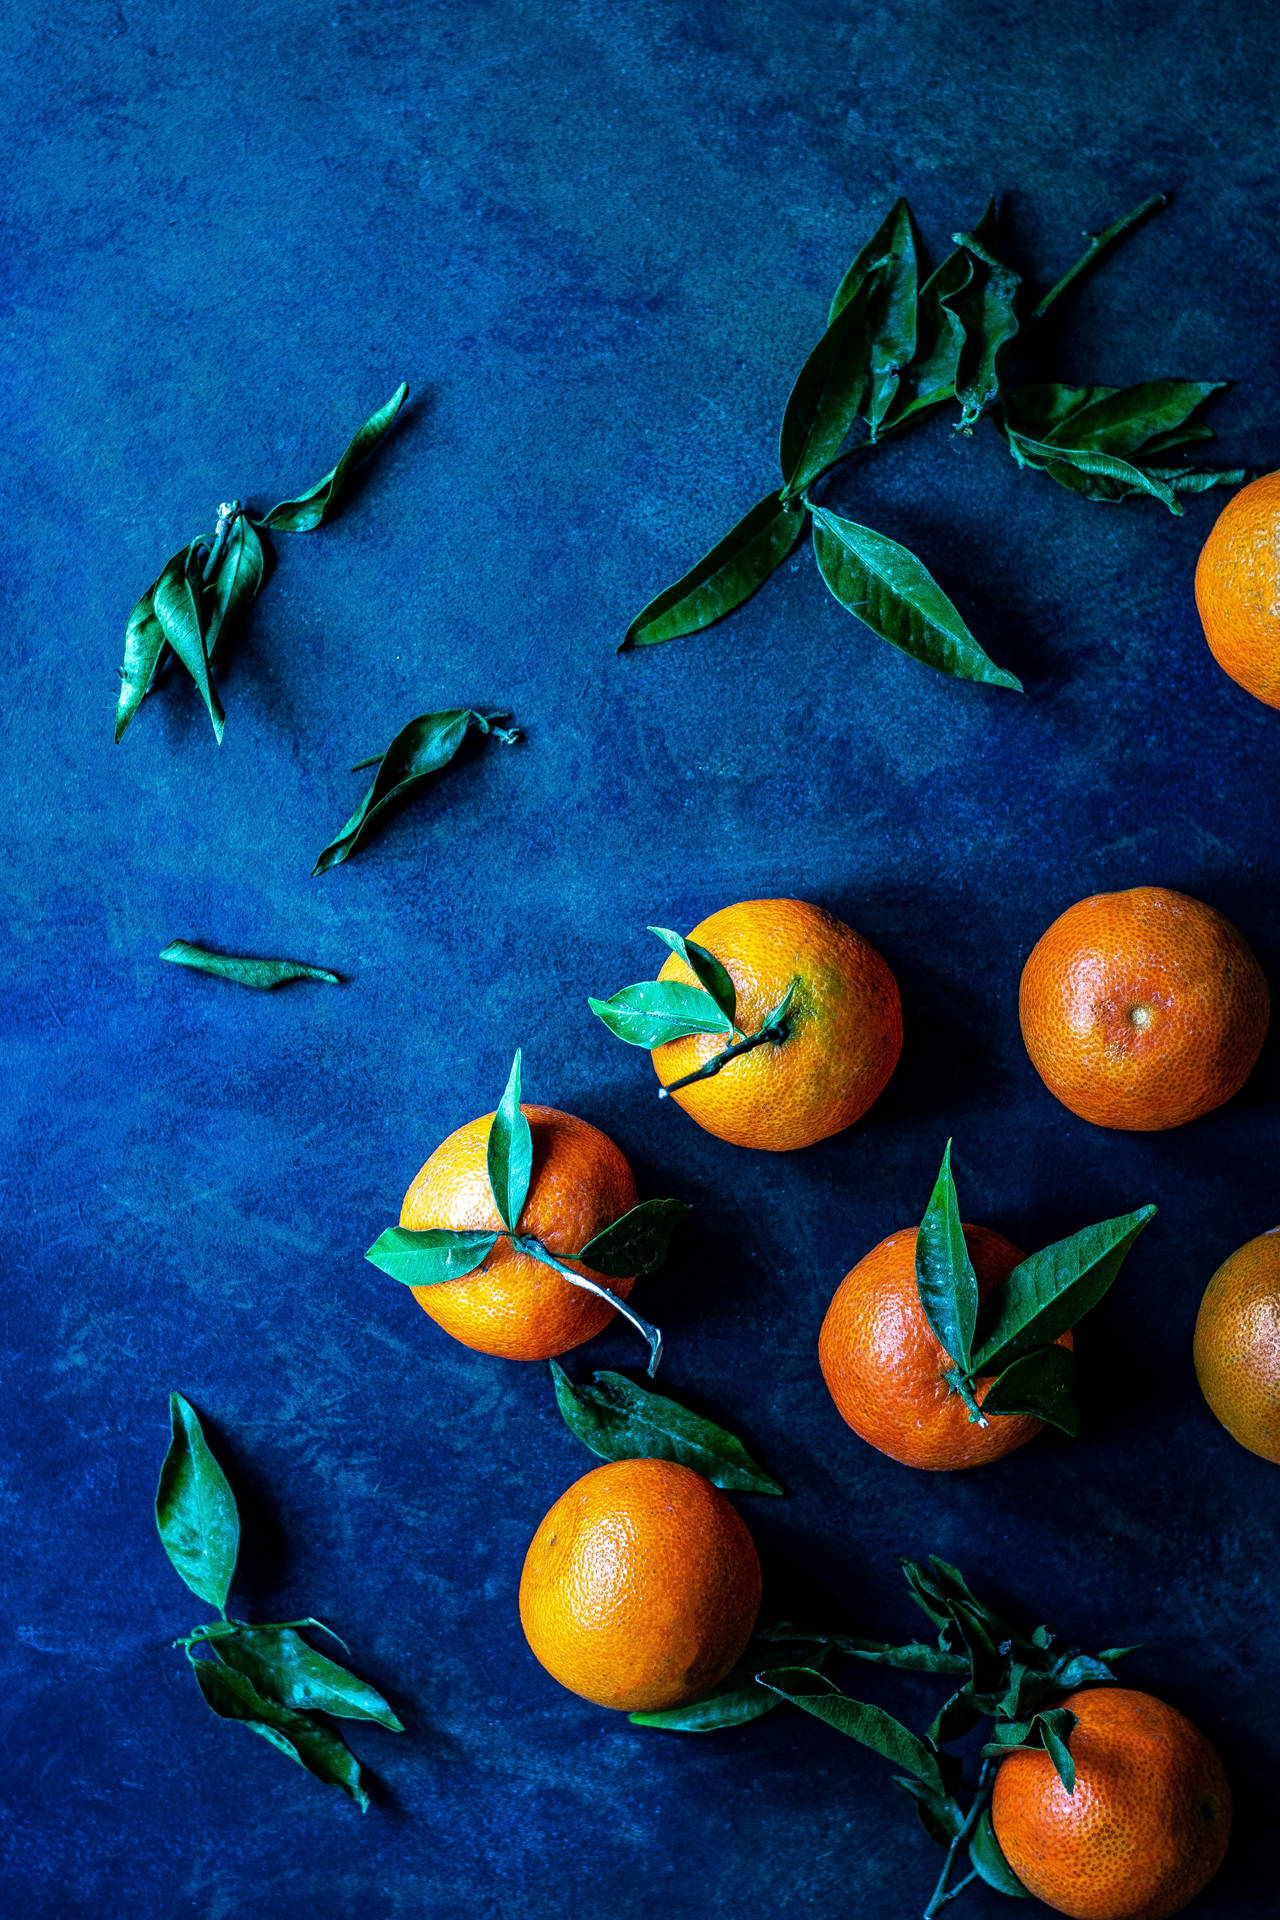 Clementinefrukter Kreativt Upplägg På En Blå Bakgrund. Wallpaper